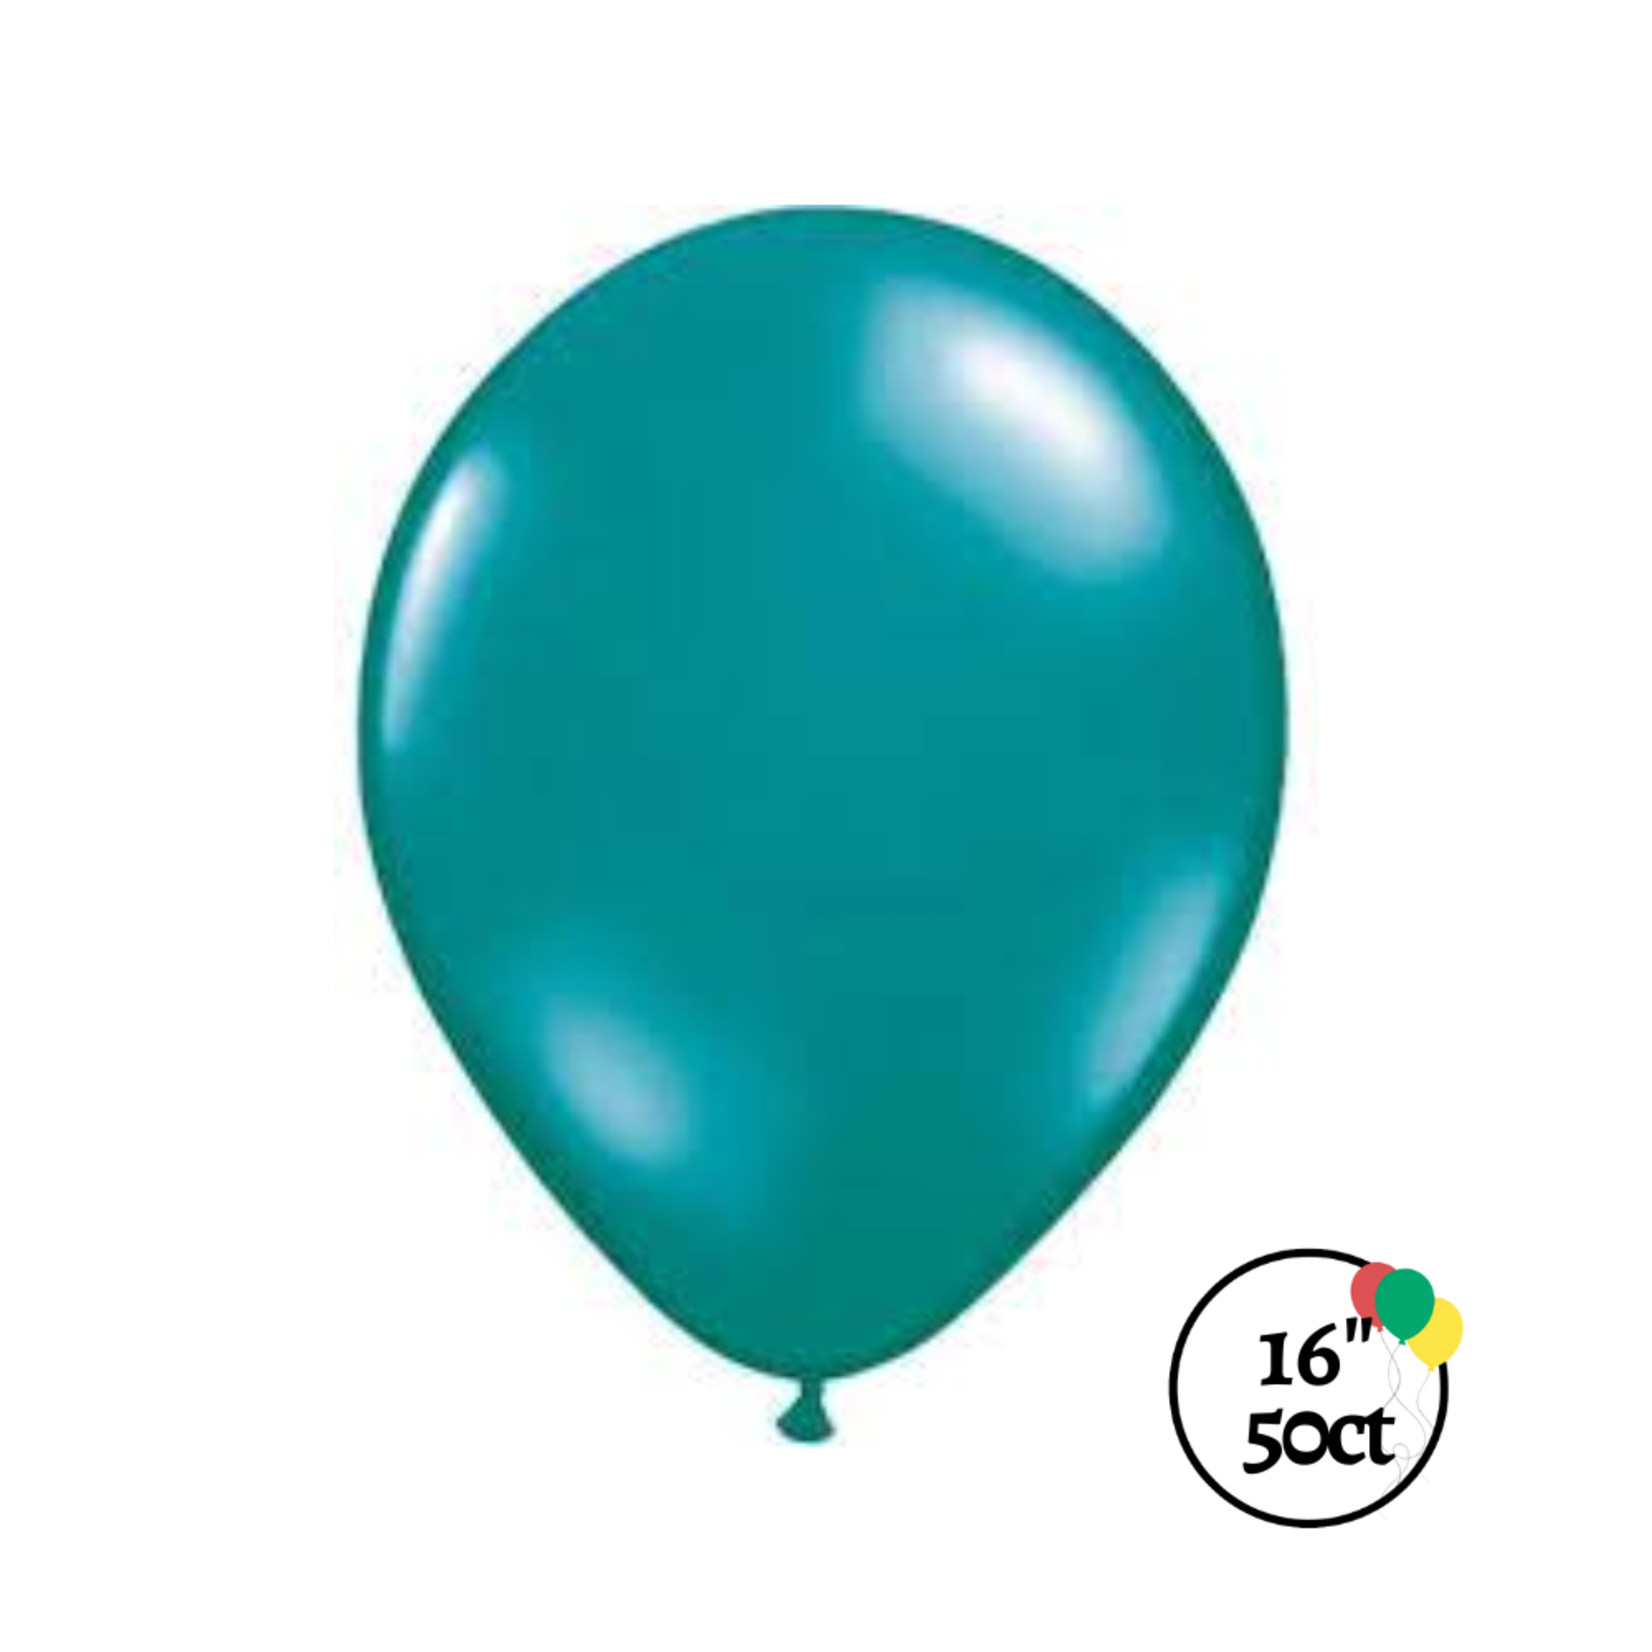 Qualatex Qualatex Jewel Teal Balloon 16" 50ct